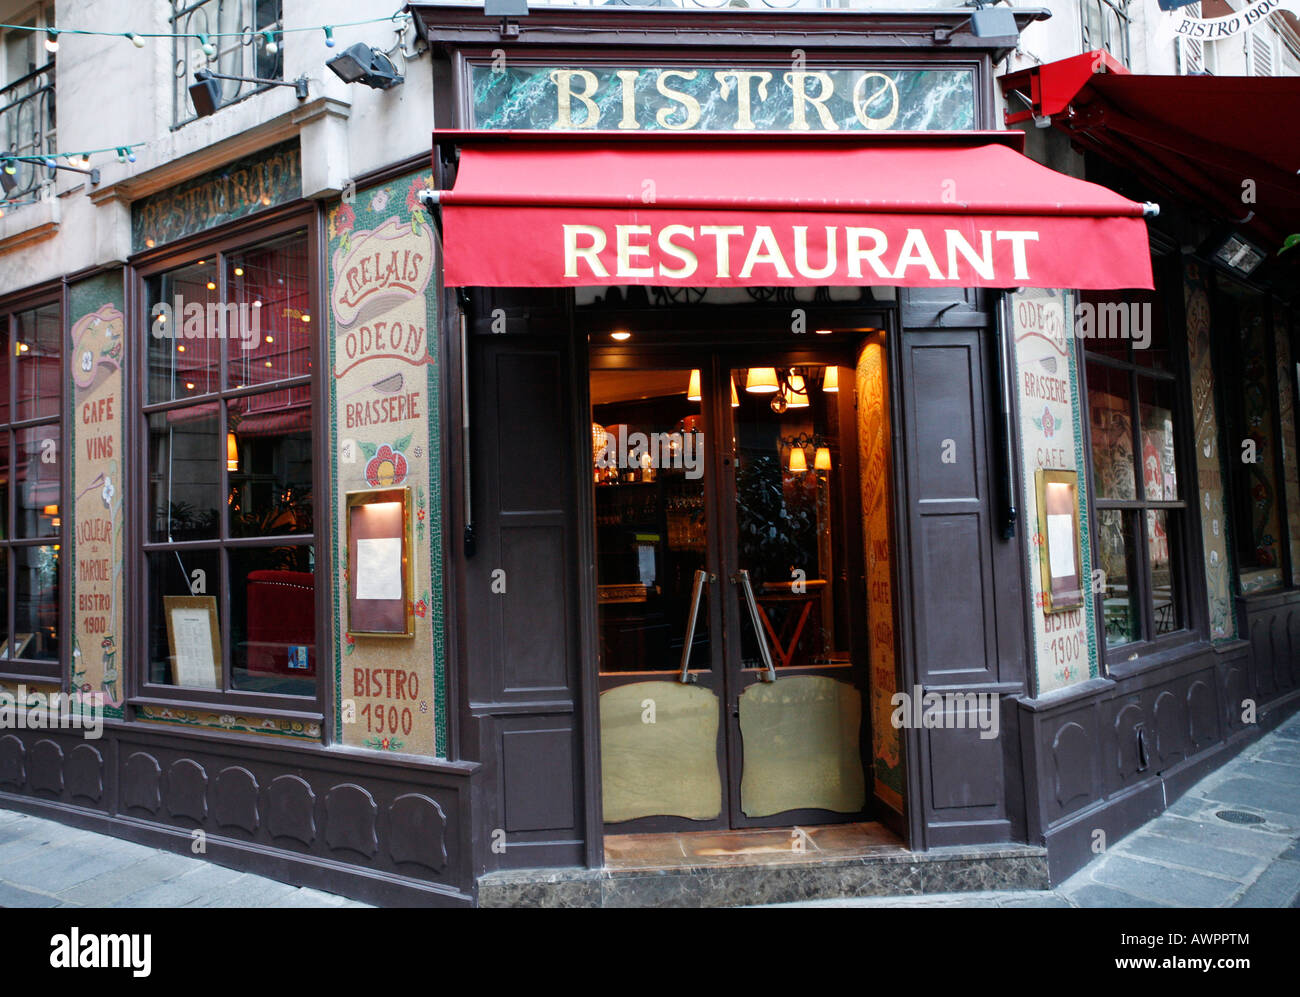 Bistro Restaurant 1900 at Place de l'Odeon, Paris, France, Europe Stock Photo